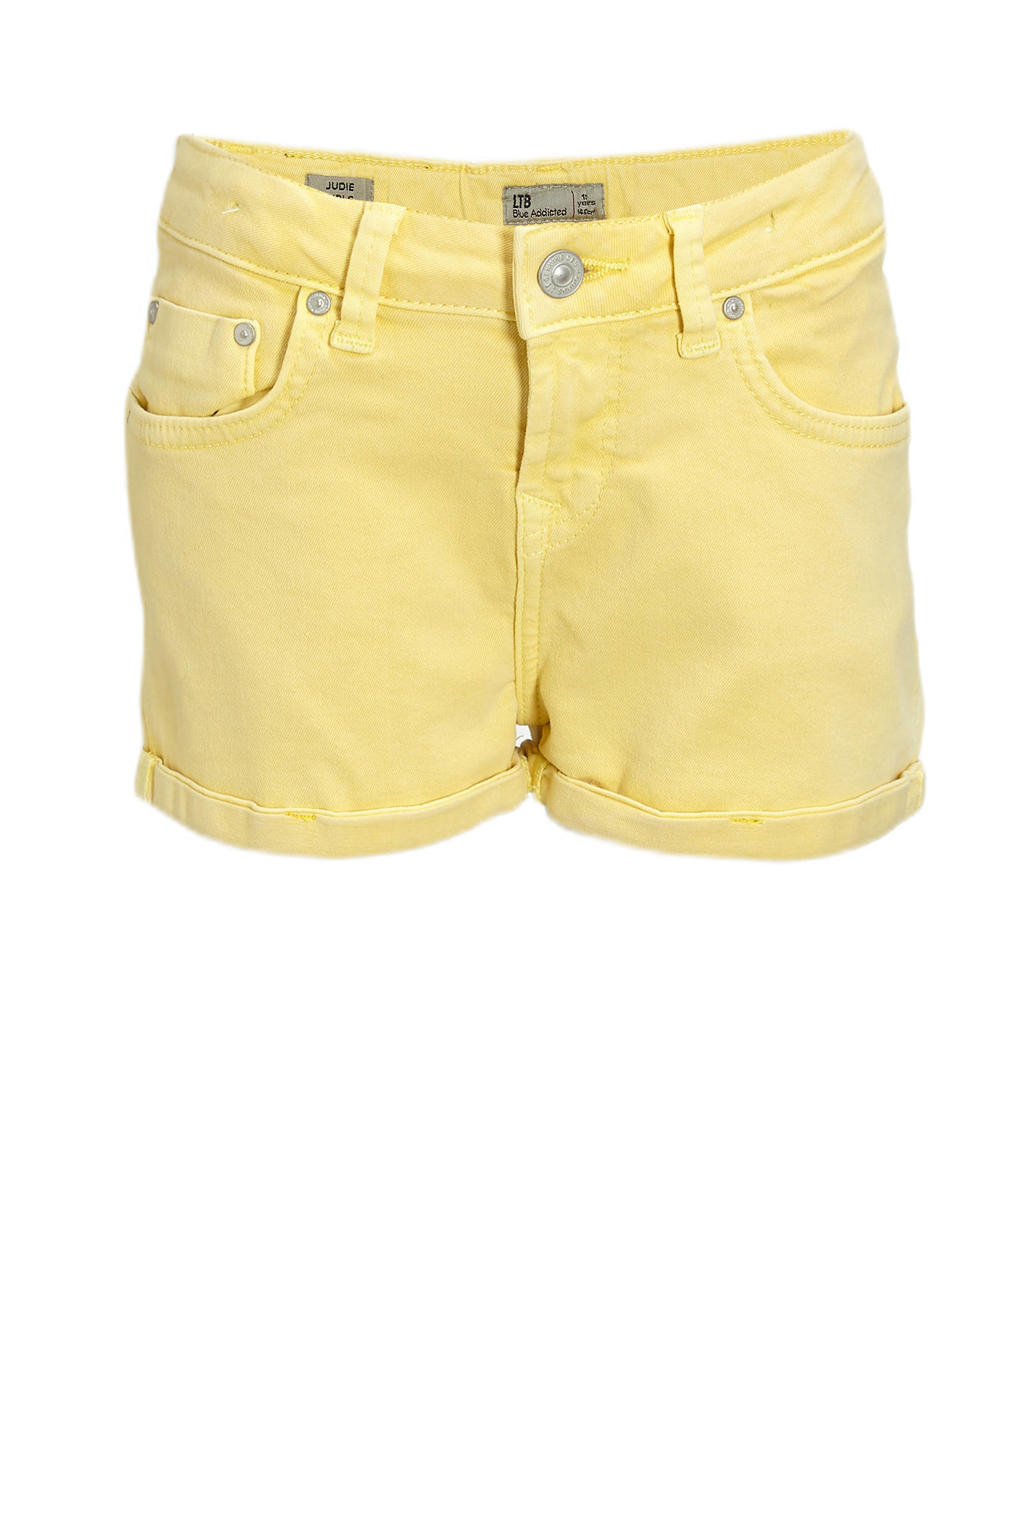 Gele meisjes LTB jeans short van stretchdenim met regular waist en rits- en knoopsluiting